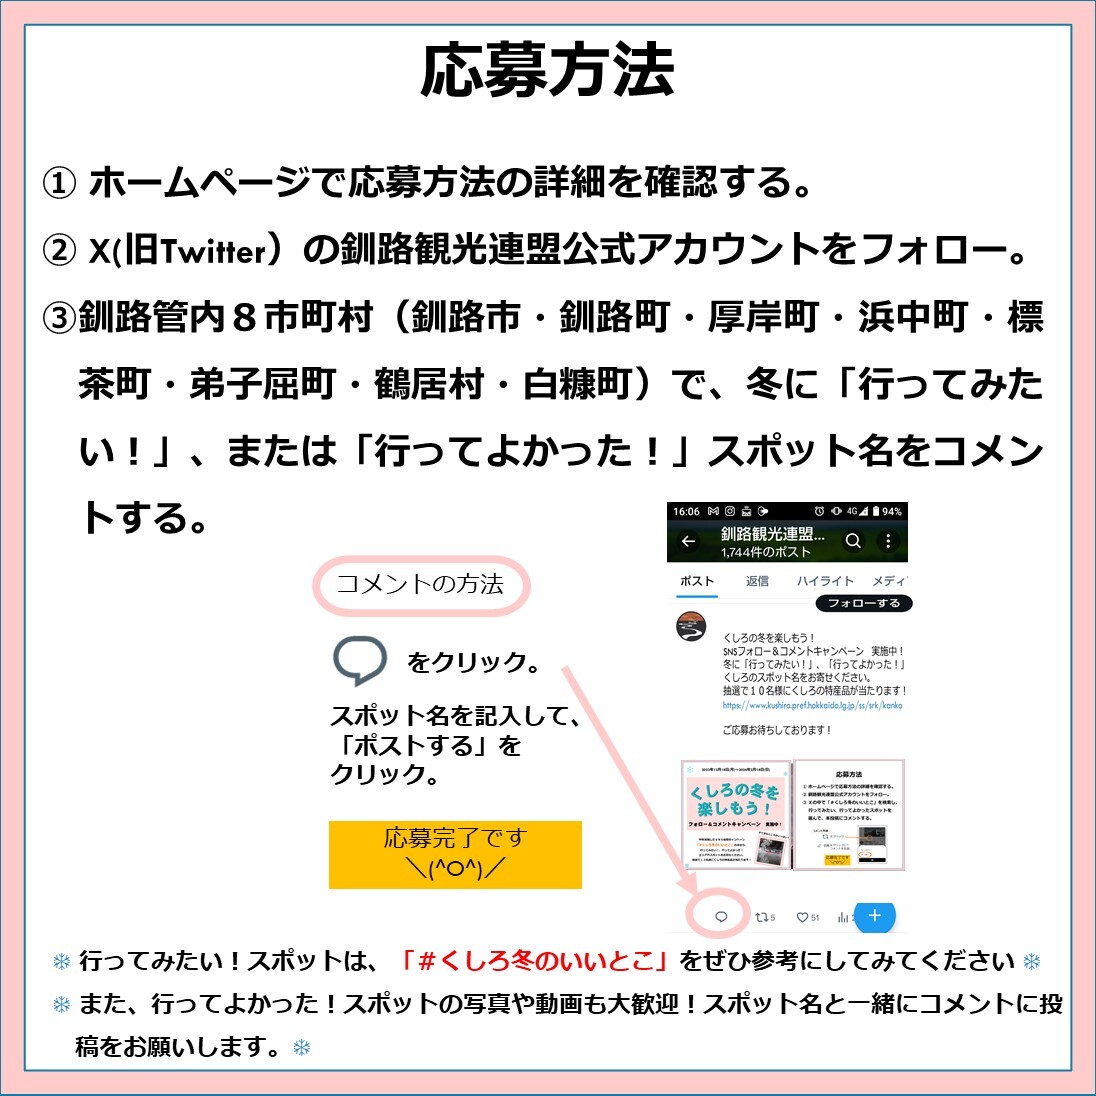 キャンペーン応募方法 (JPG 216KB)